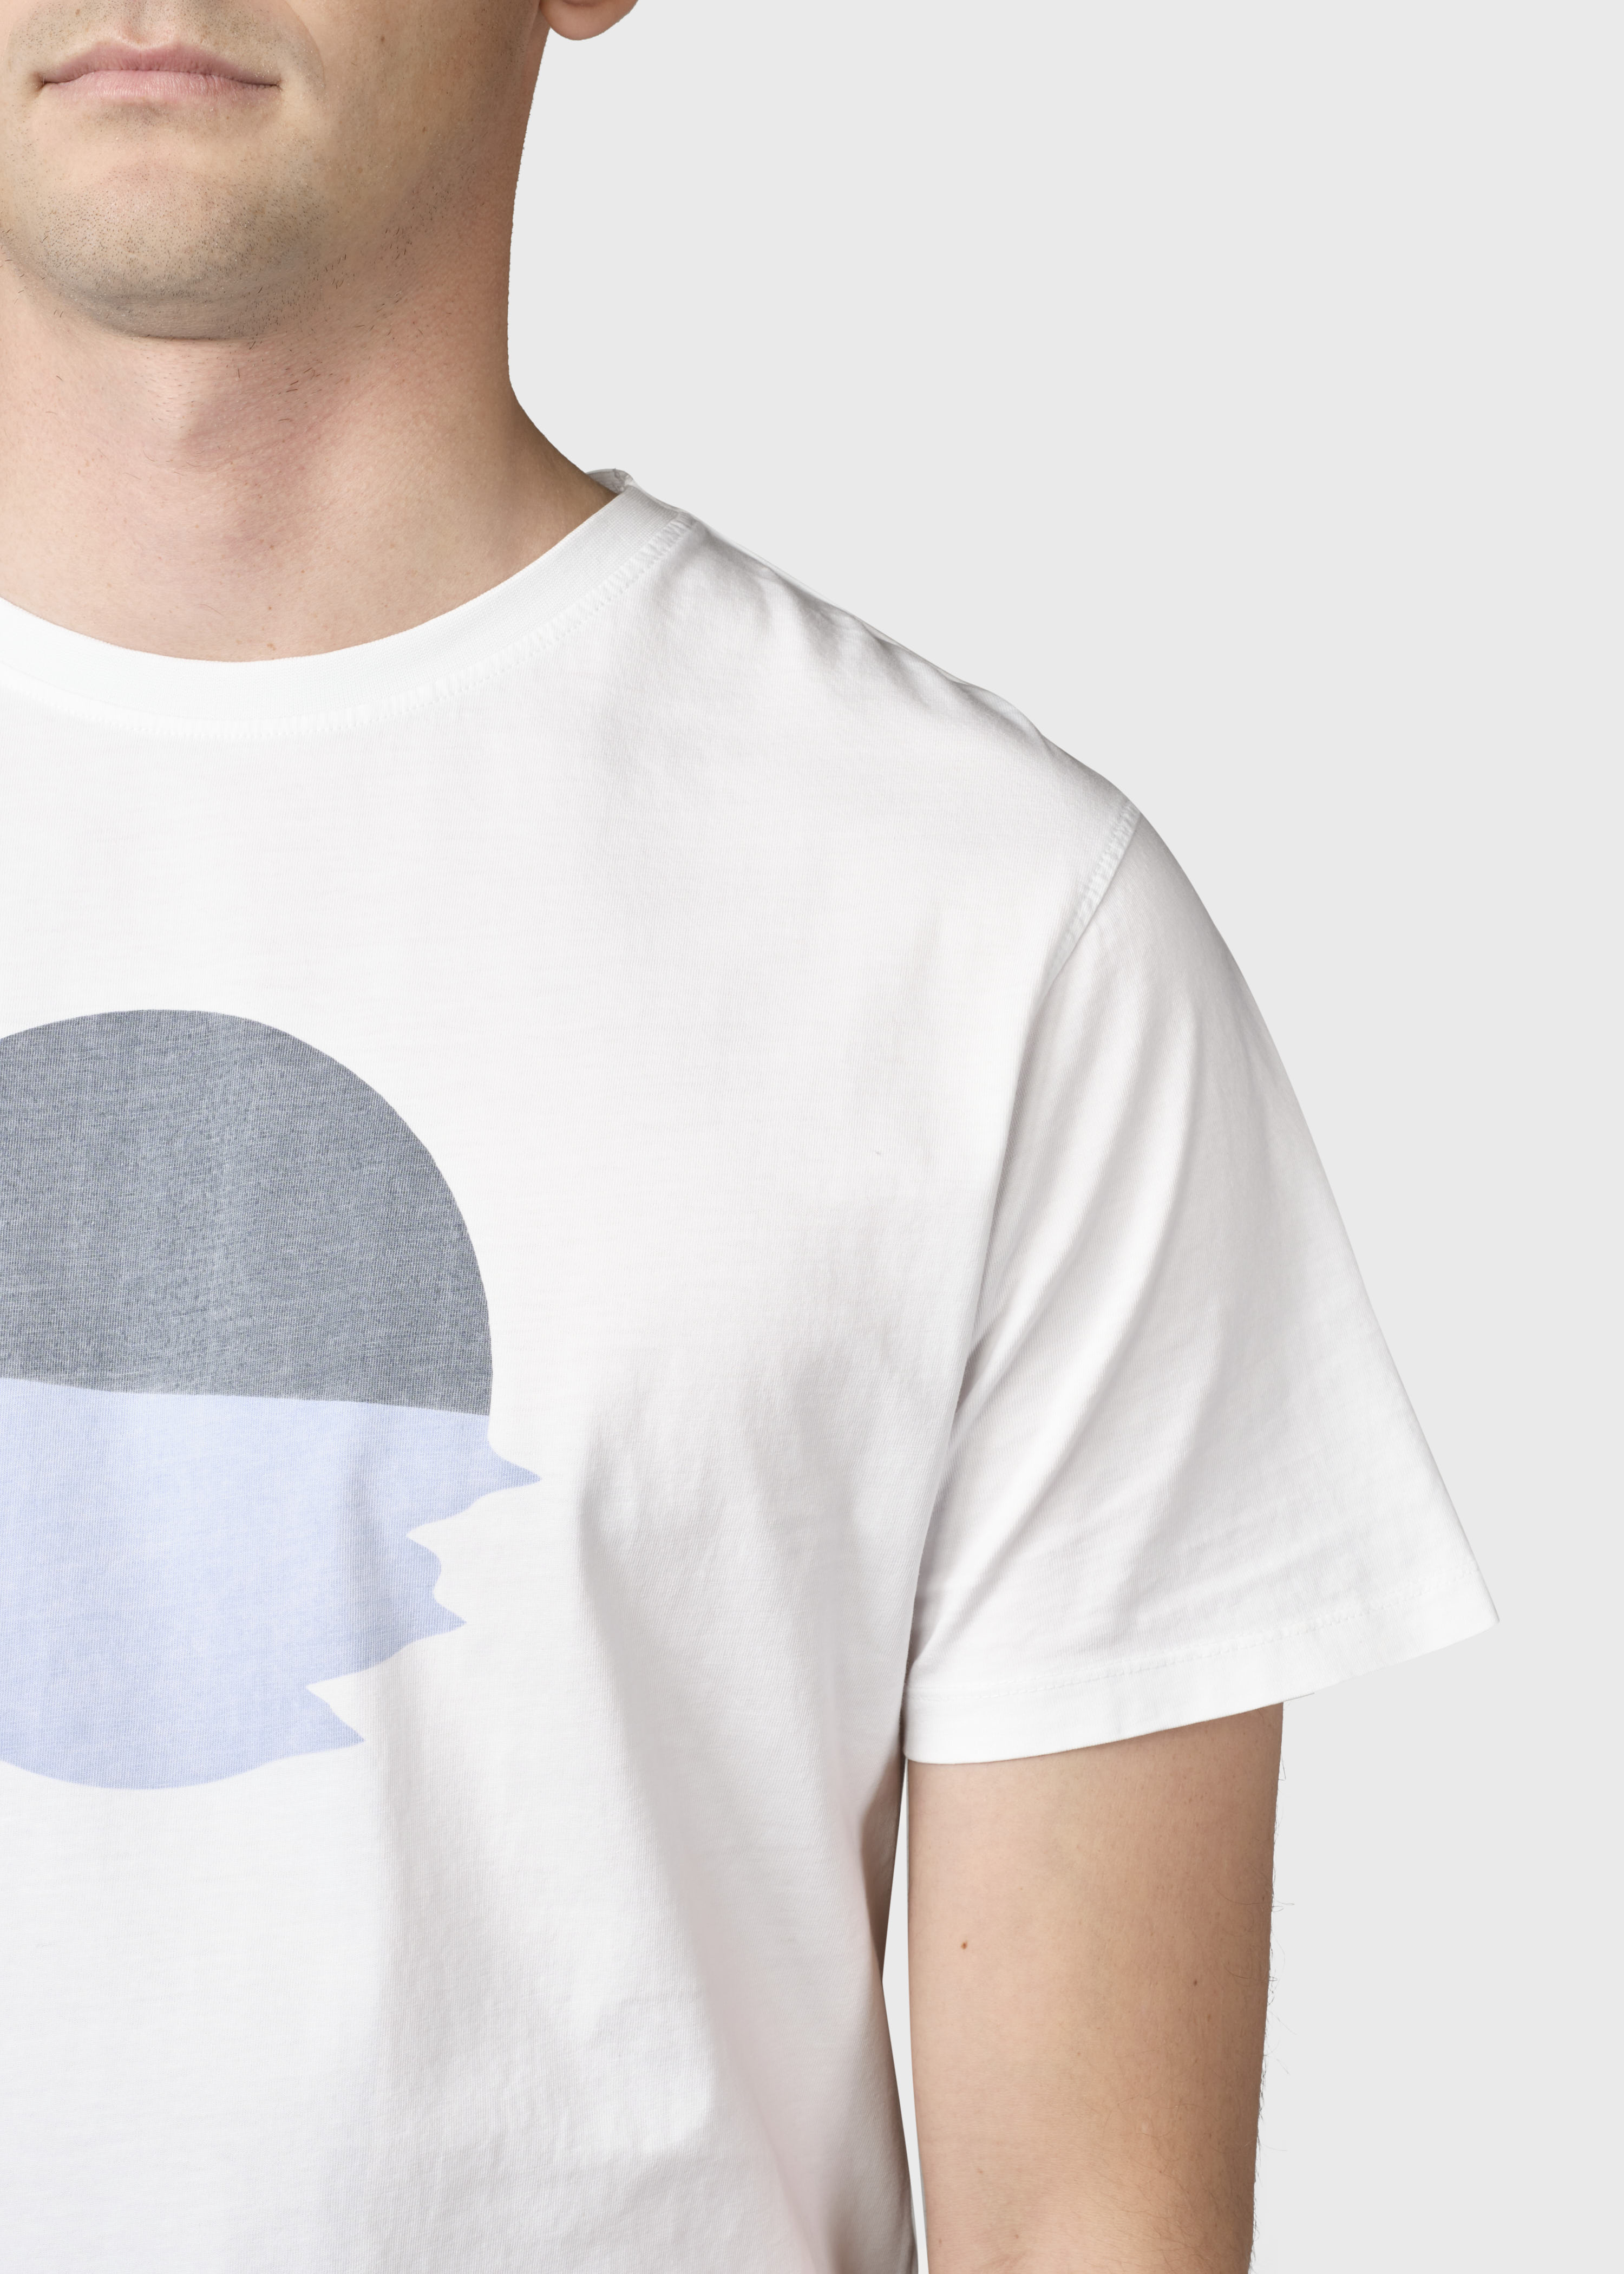 Bedrucktes T-Shirt Pelle tee White/navy/ocean